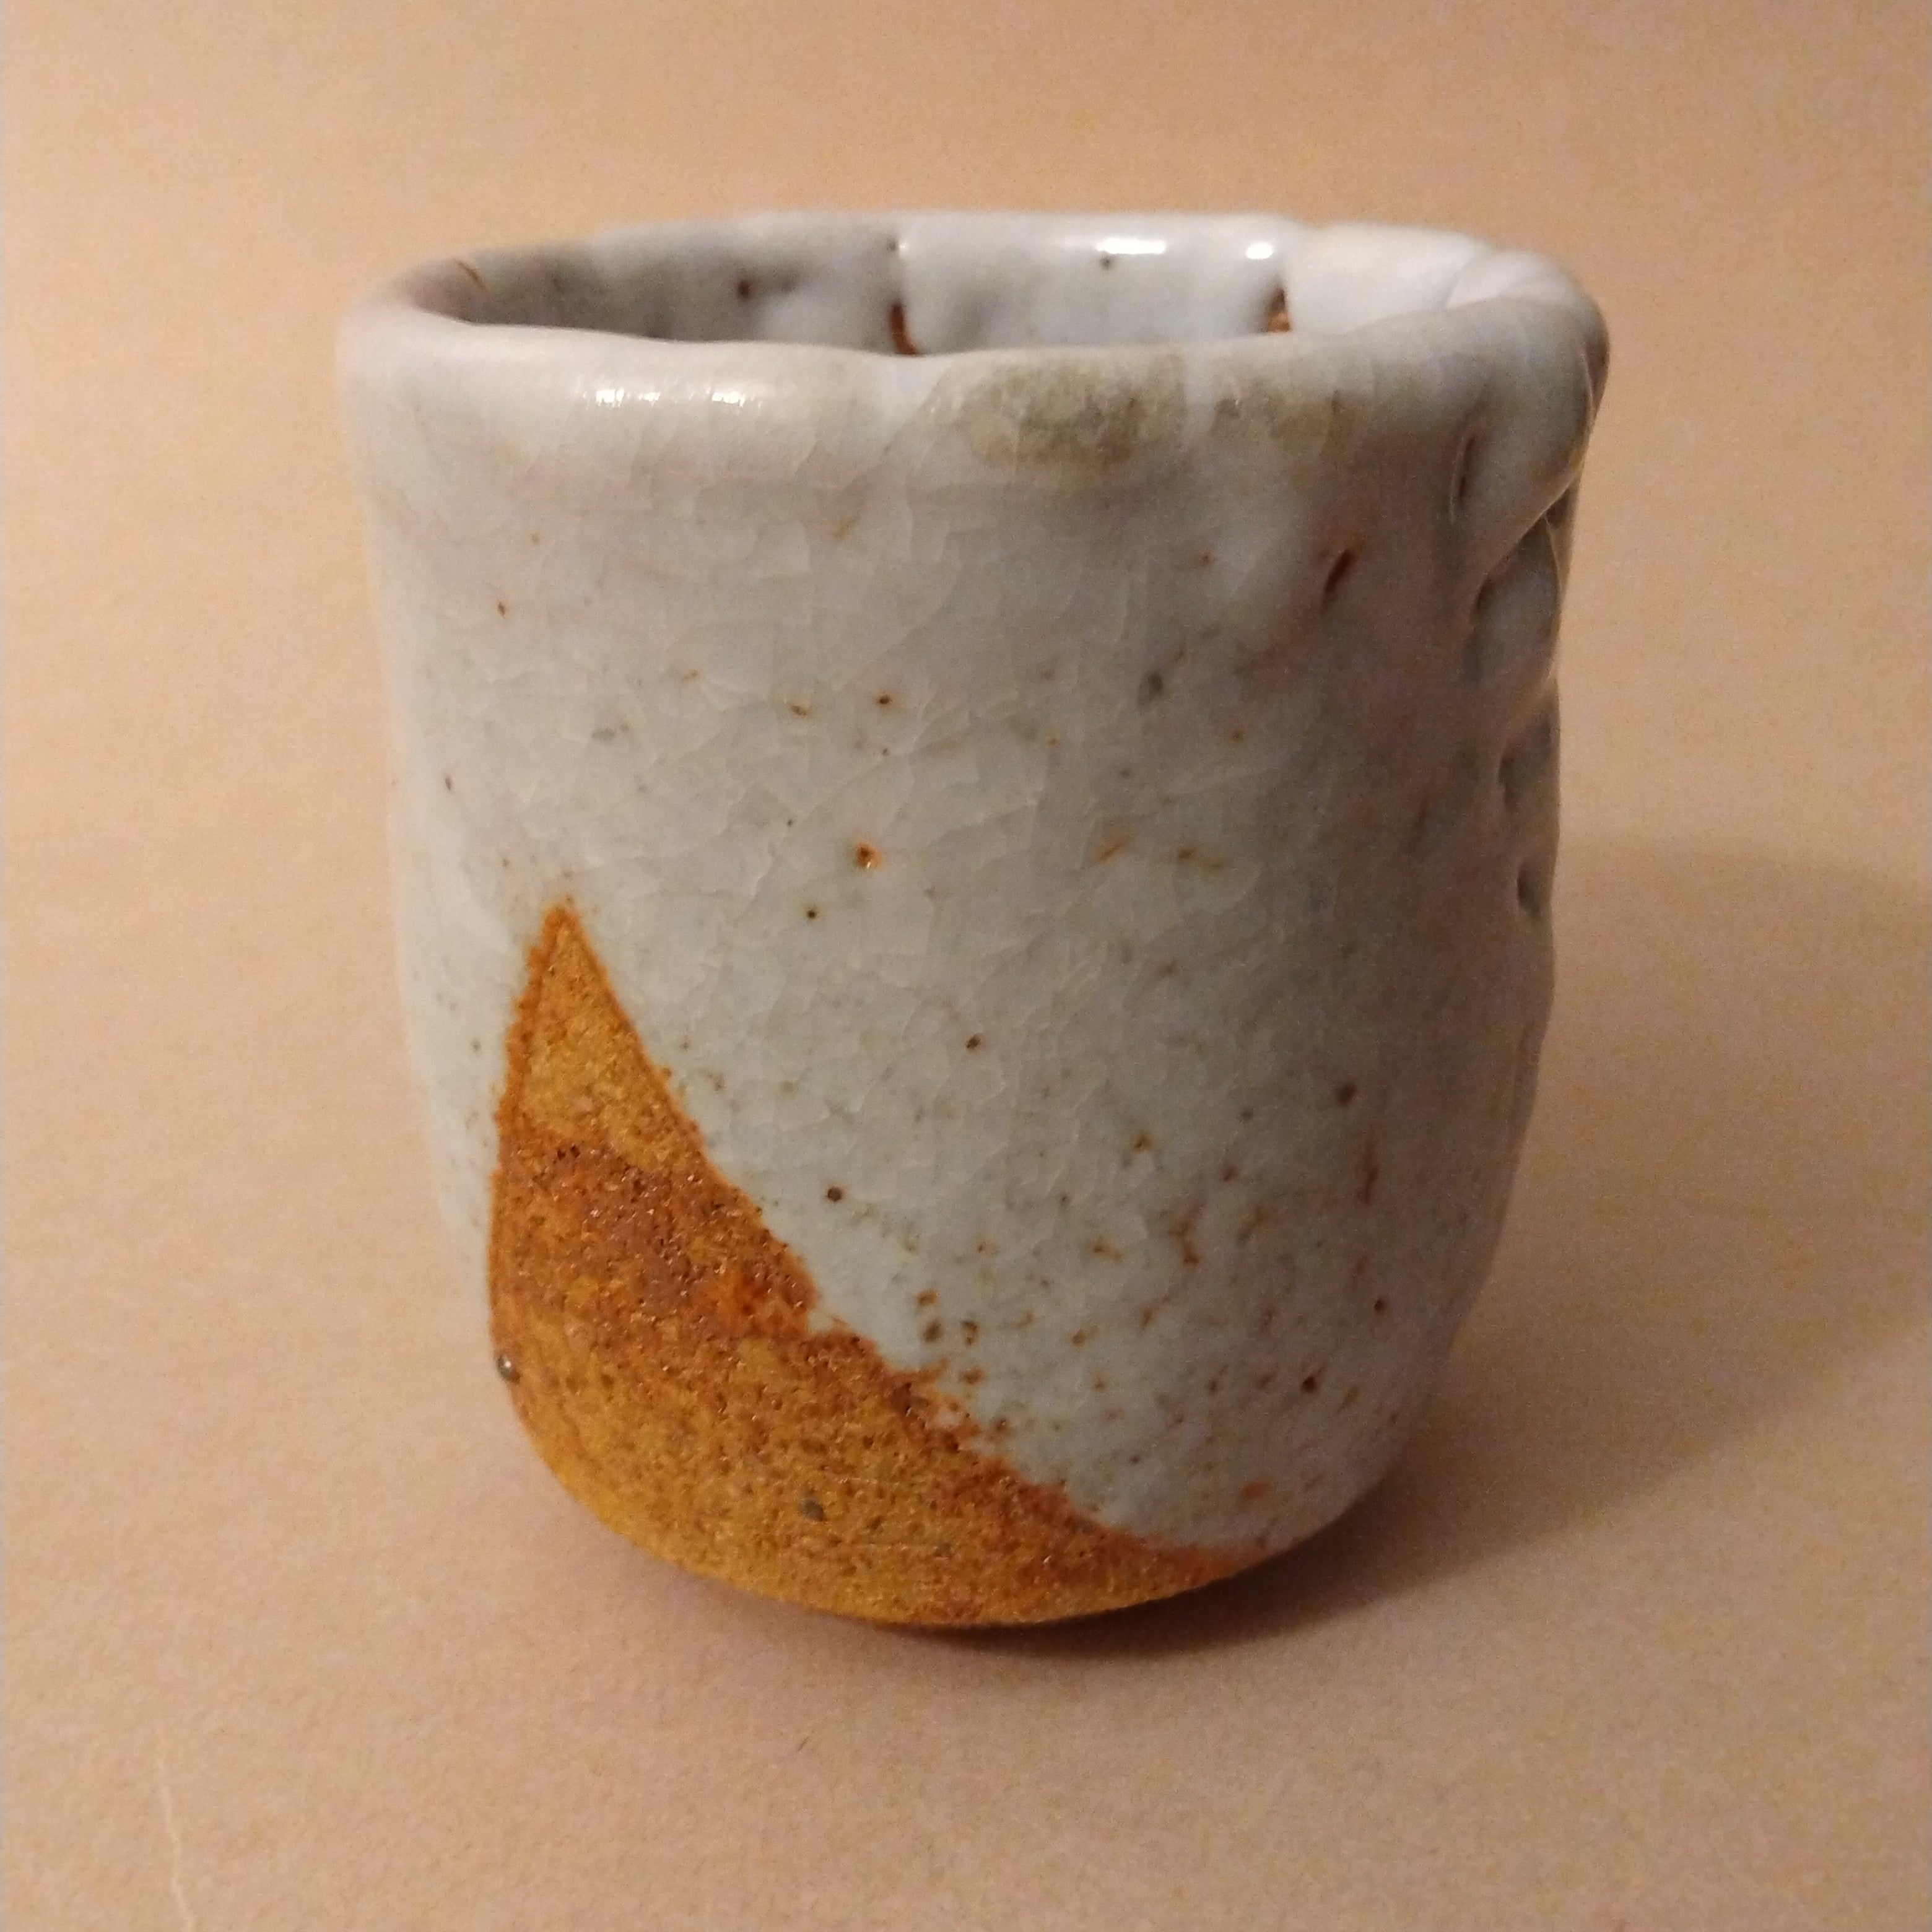 Shino Glaze Tea Cup, Yunomi, by George Gledhill